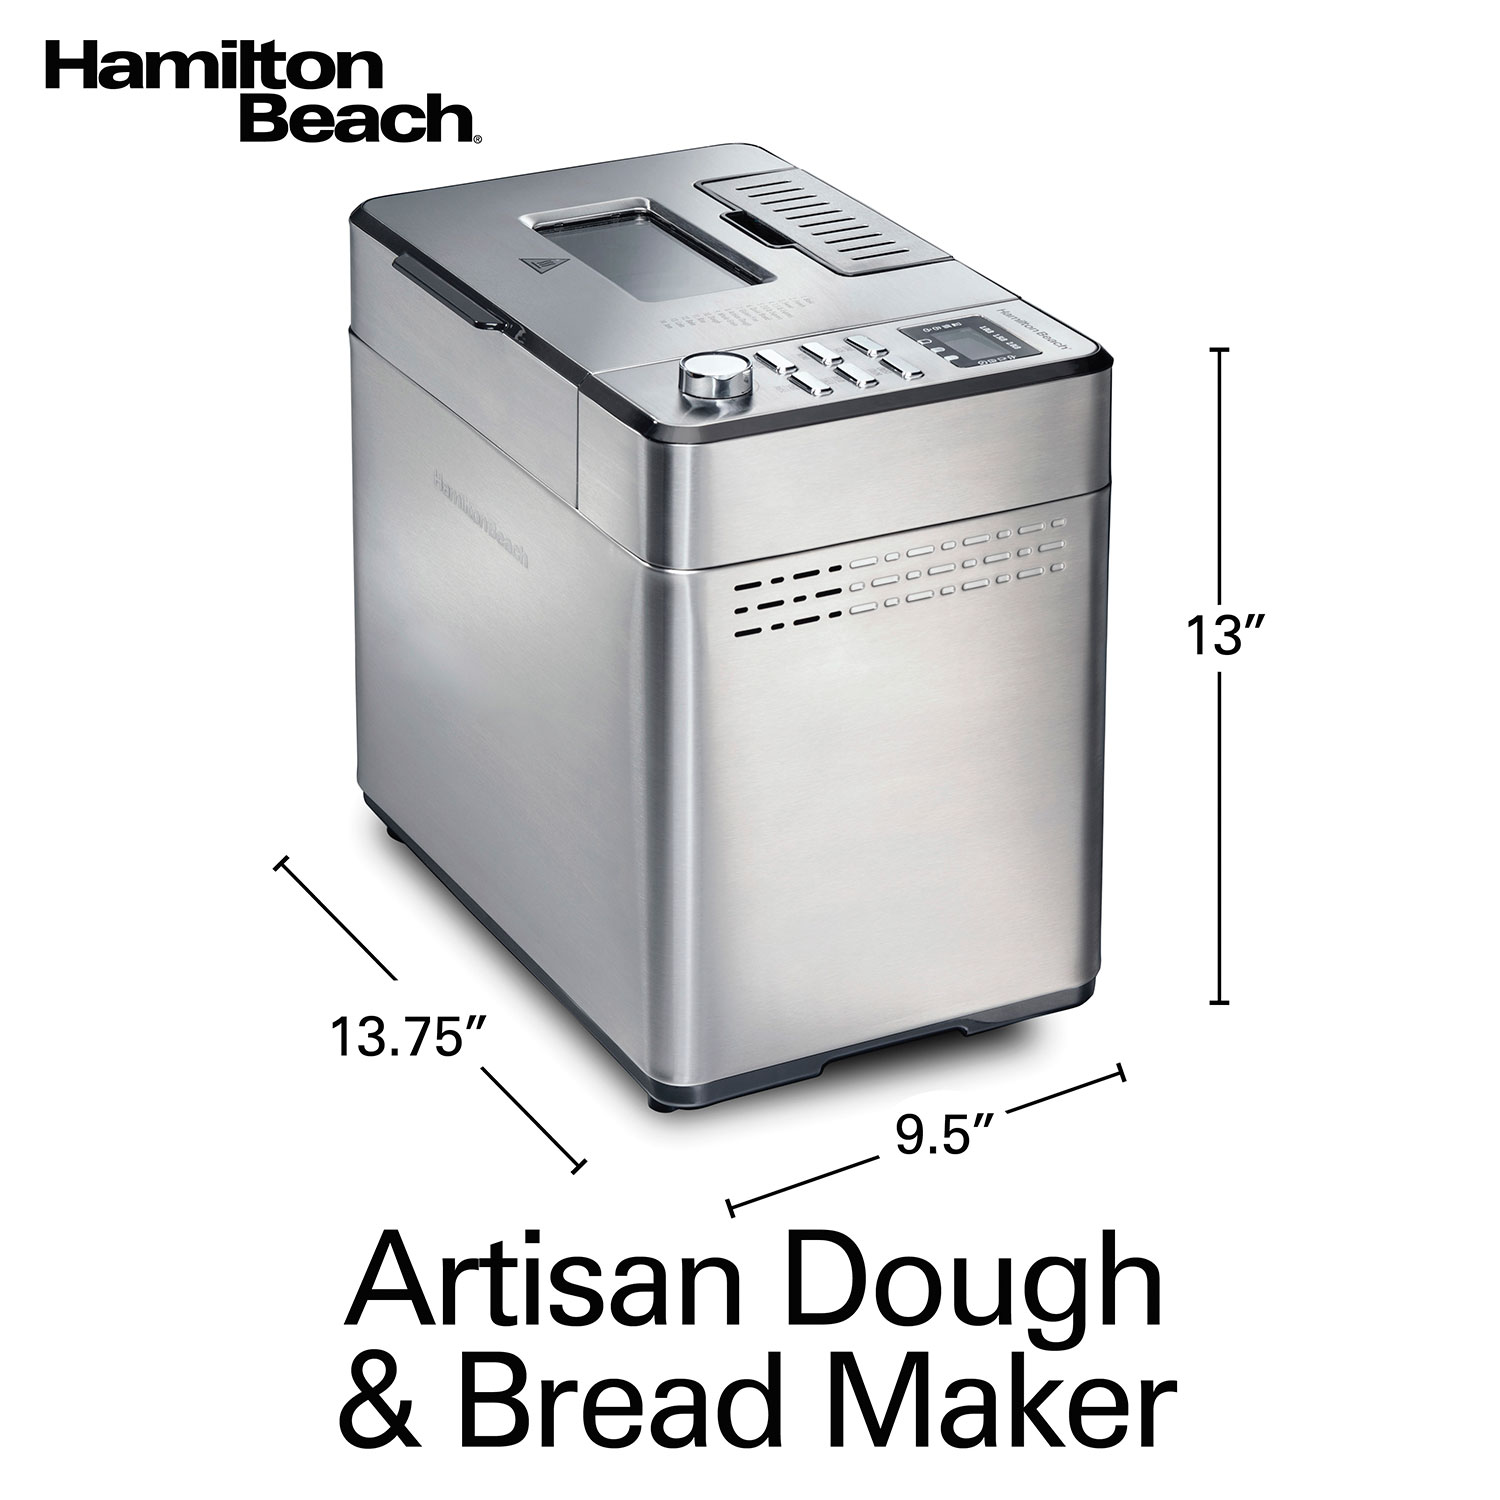 Hamilton Beach Artisan Dough & Bread Maker, Model #29886 